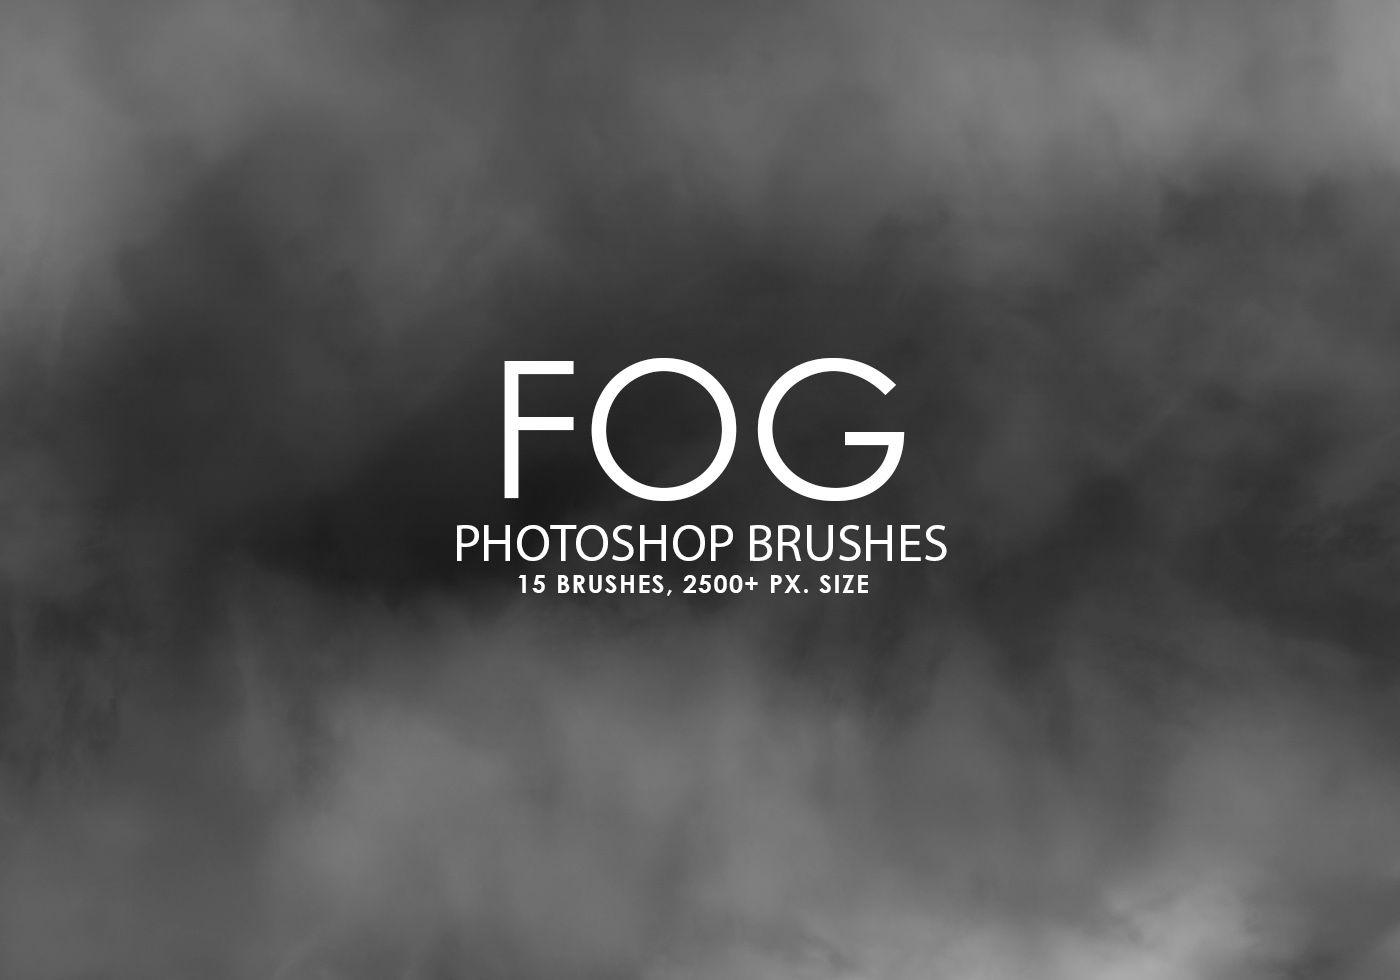 Photoshop Black and White Logo - Free Fog Photohop Brushes Photohop Brushes at Brusheezy!